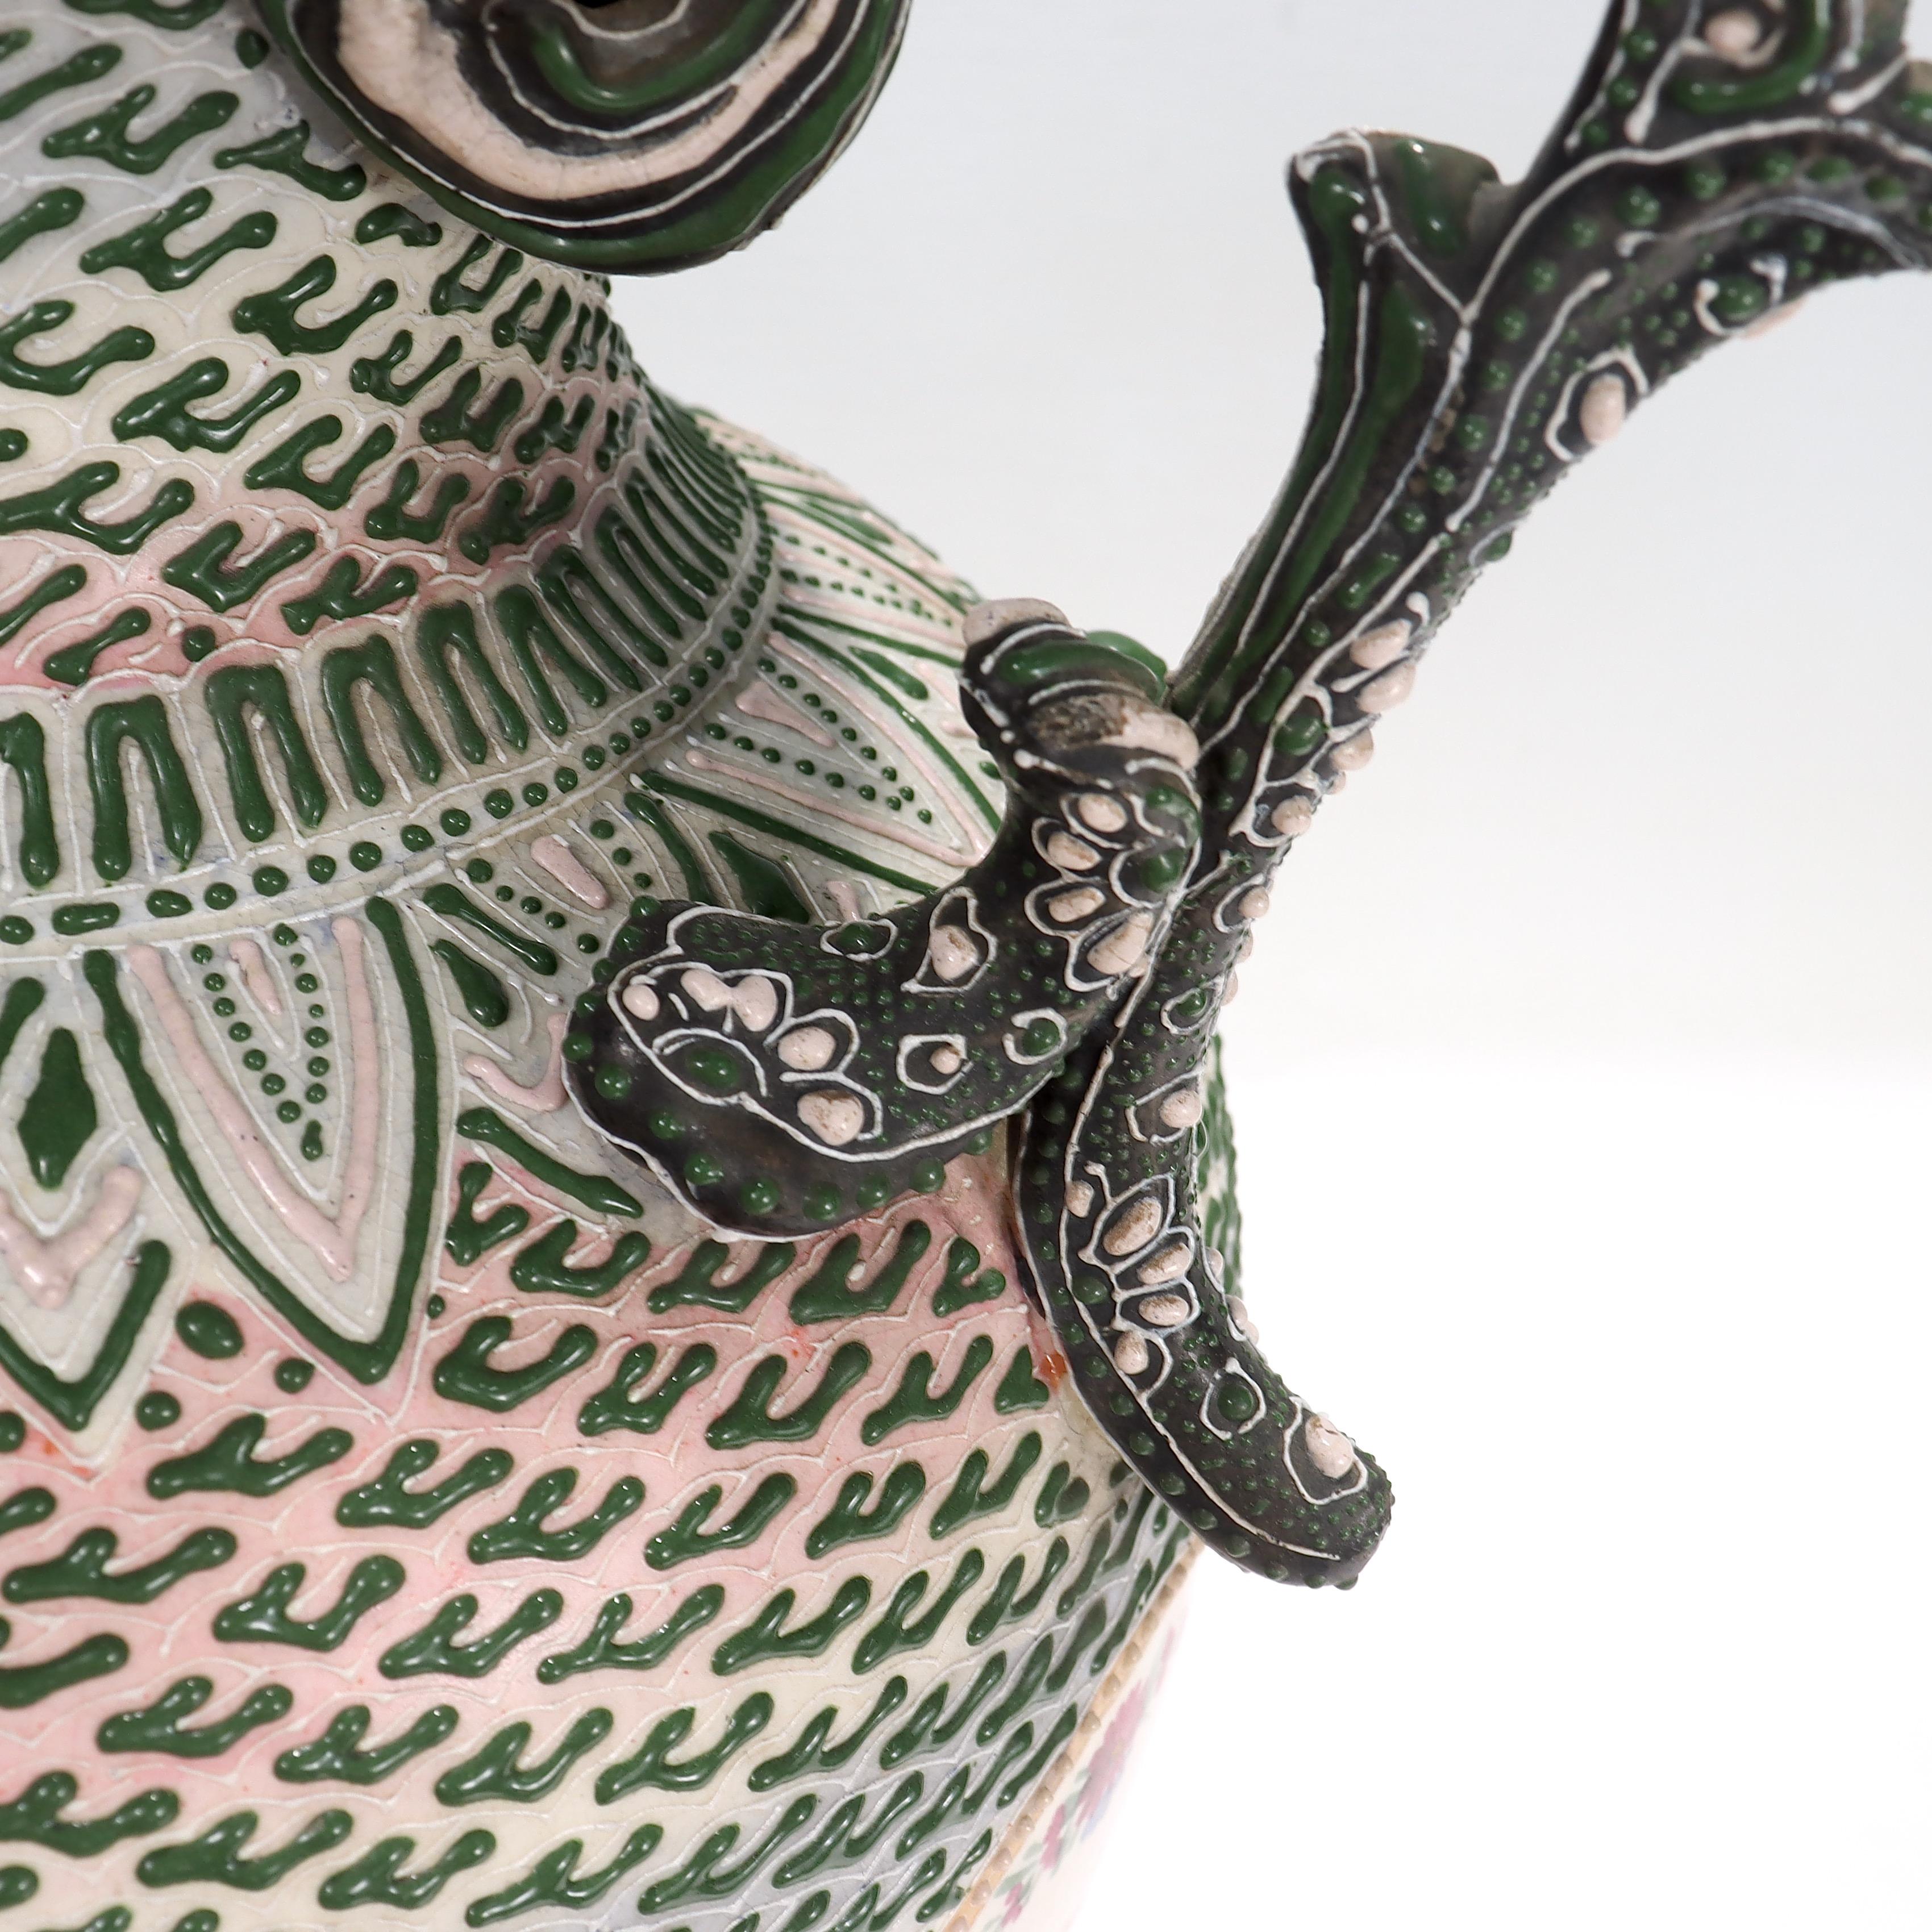 Antique Japanese Moriage Nippon Porcelain Vase or Covered Jar For Sale 12